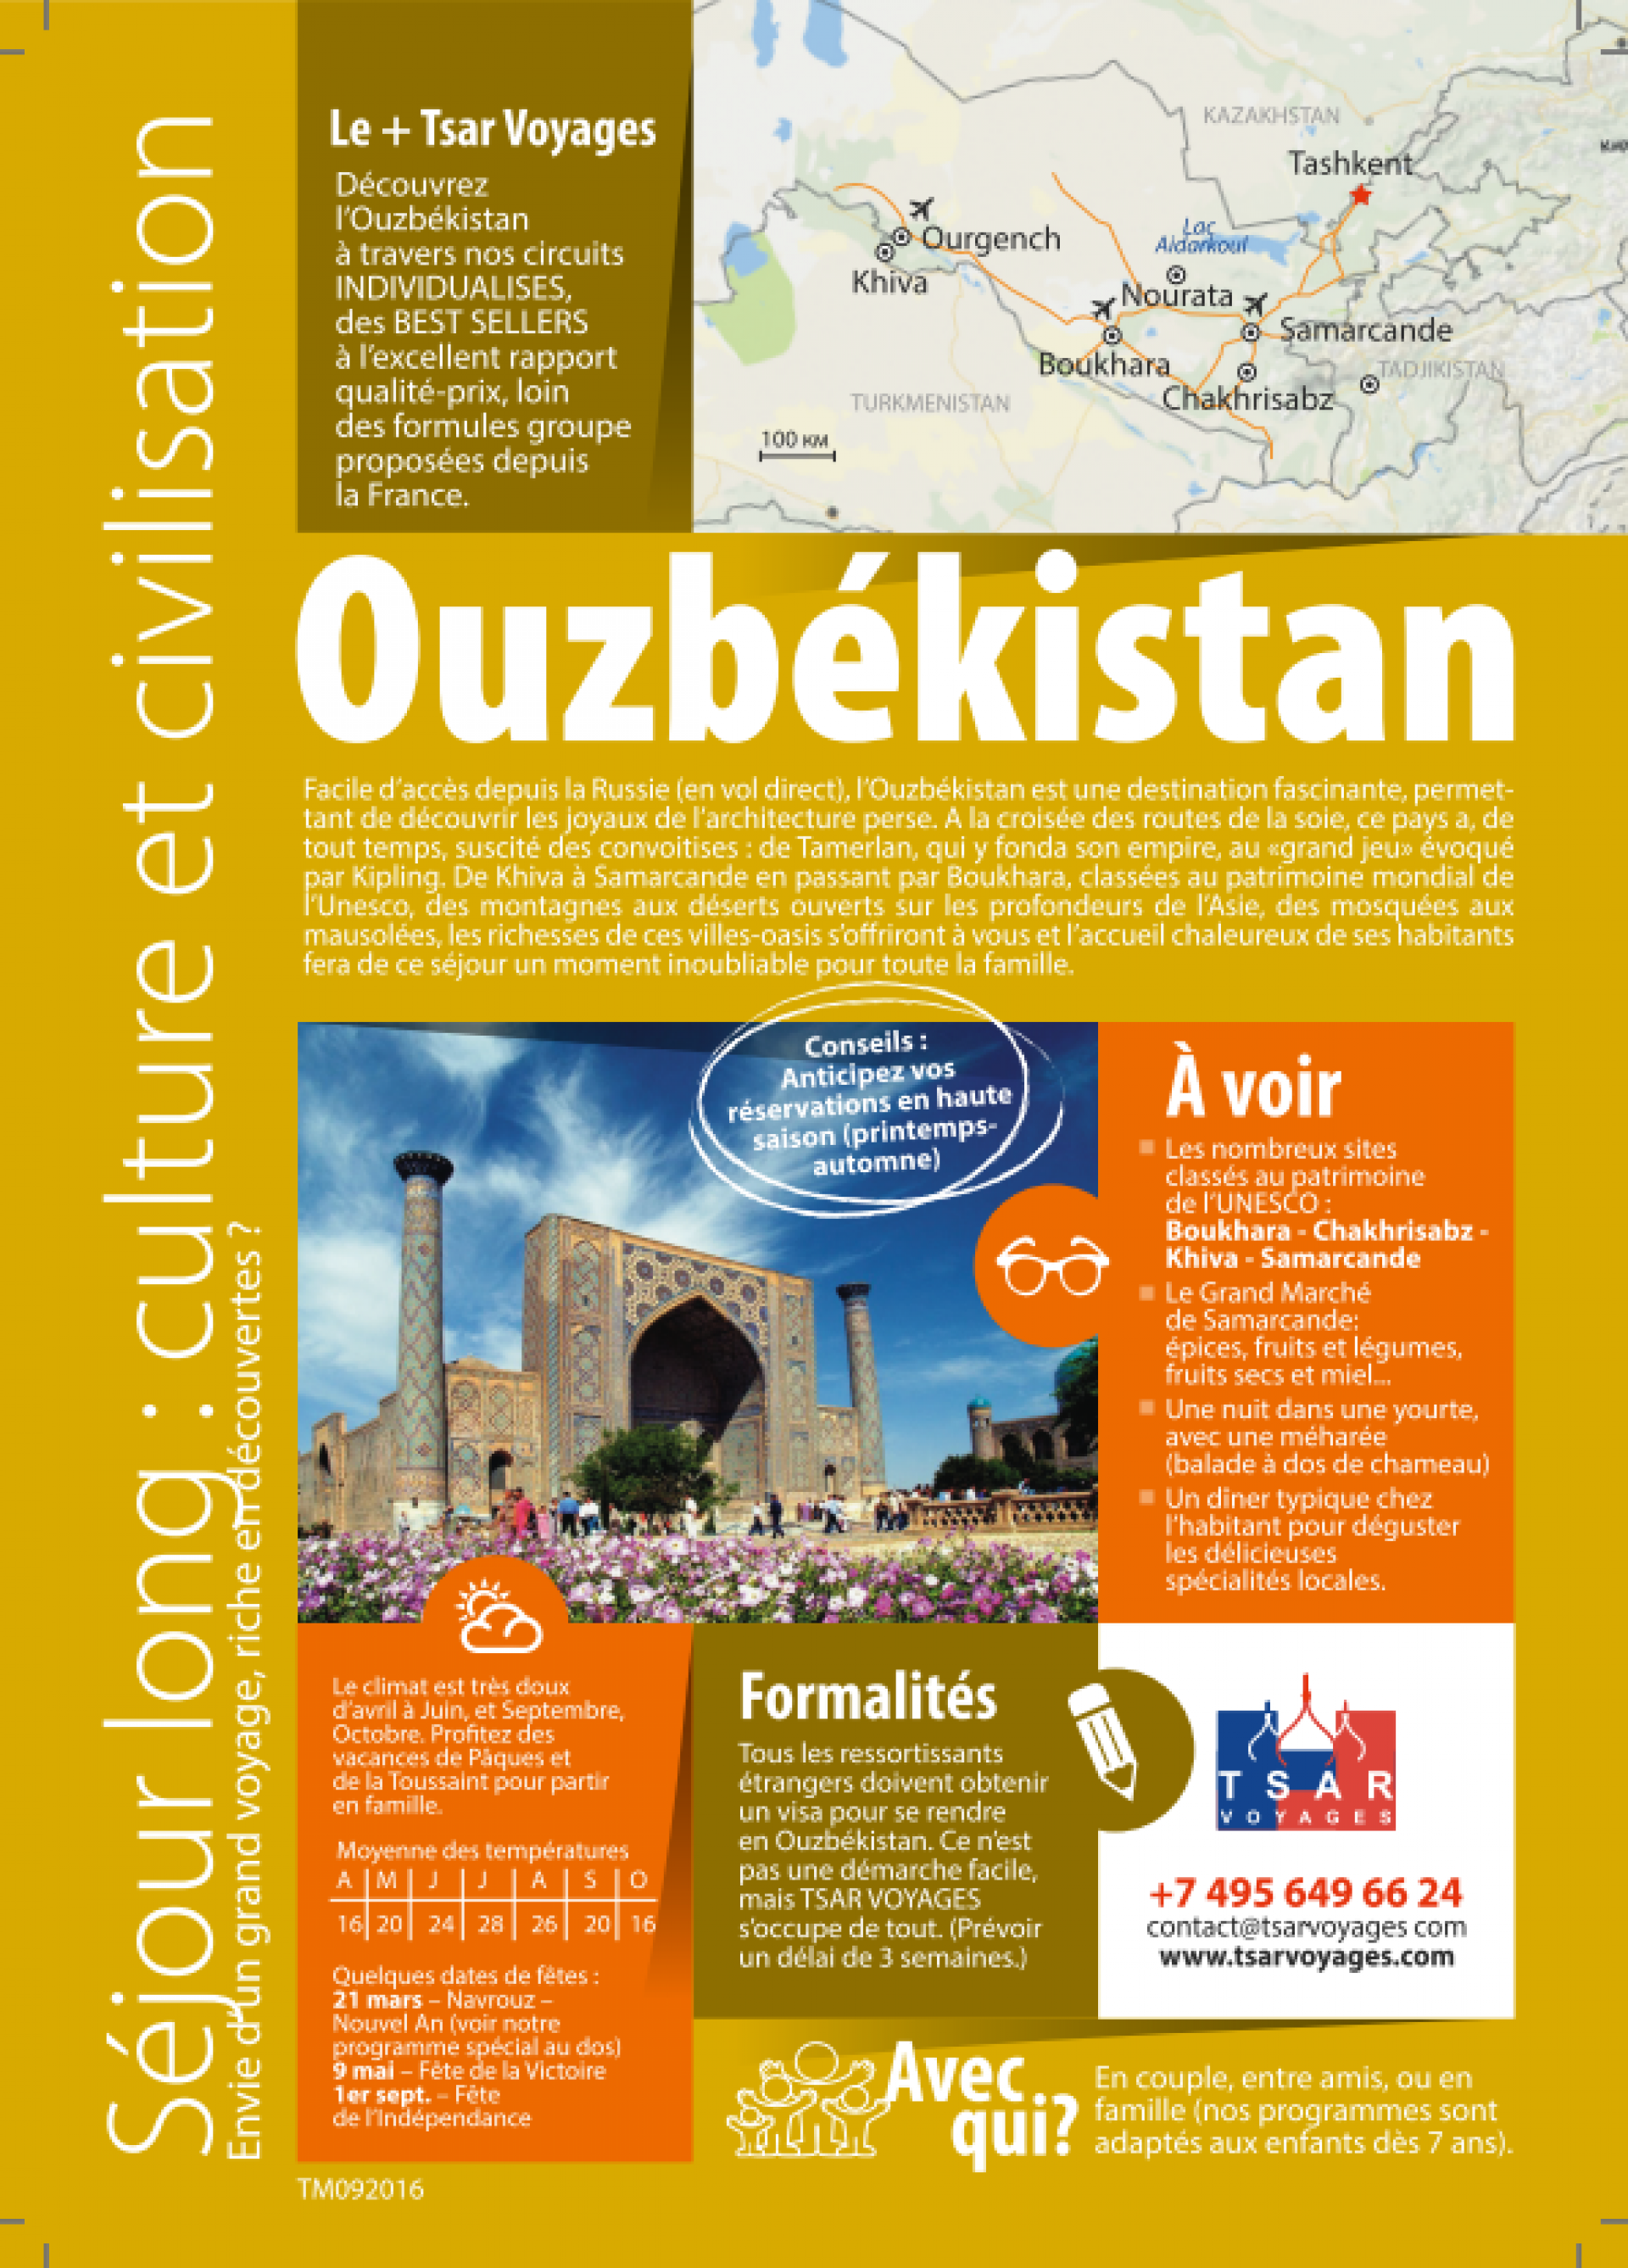 voyages ouzbekistan promo